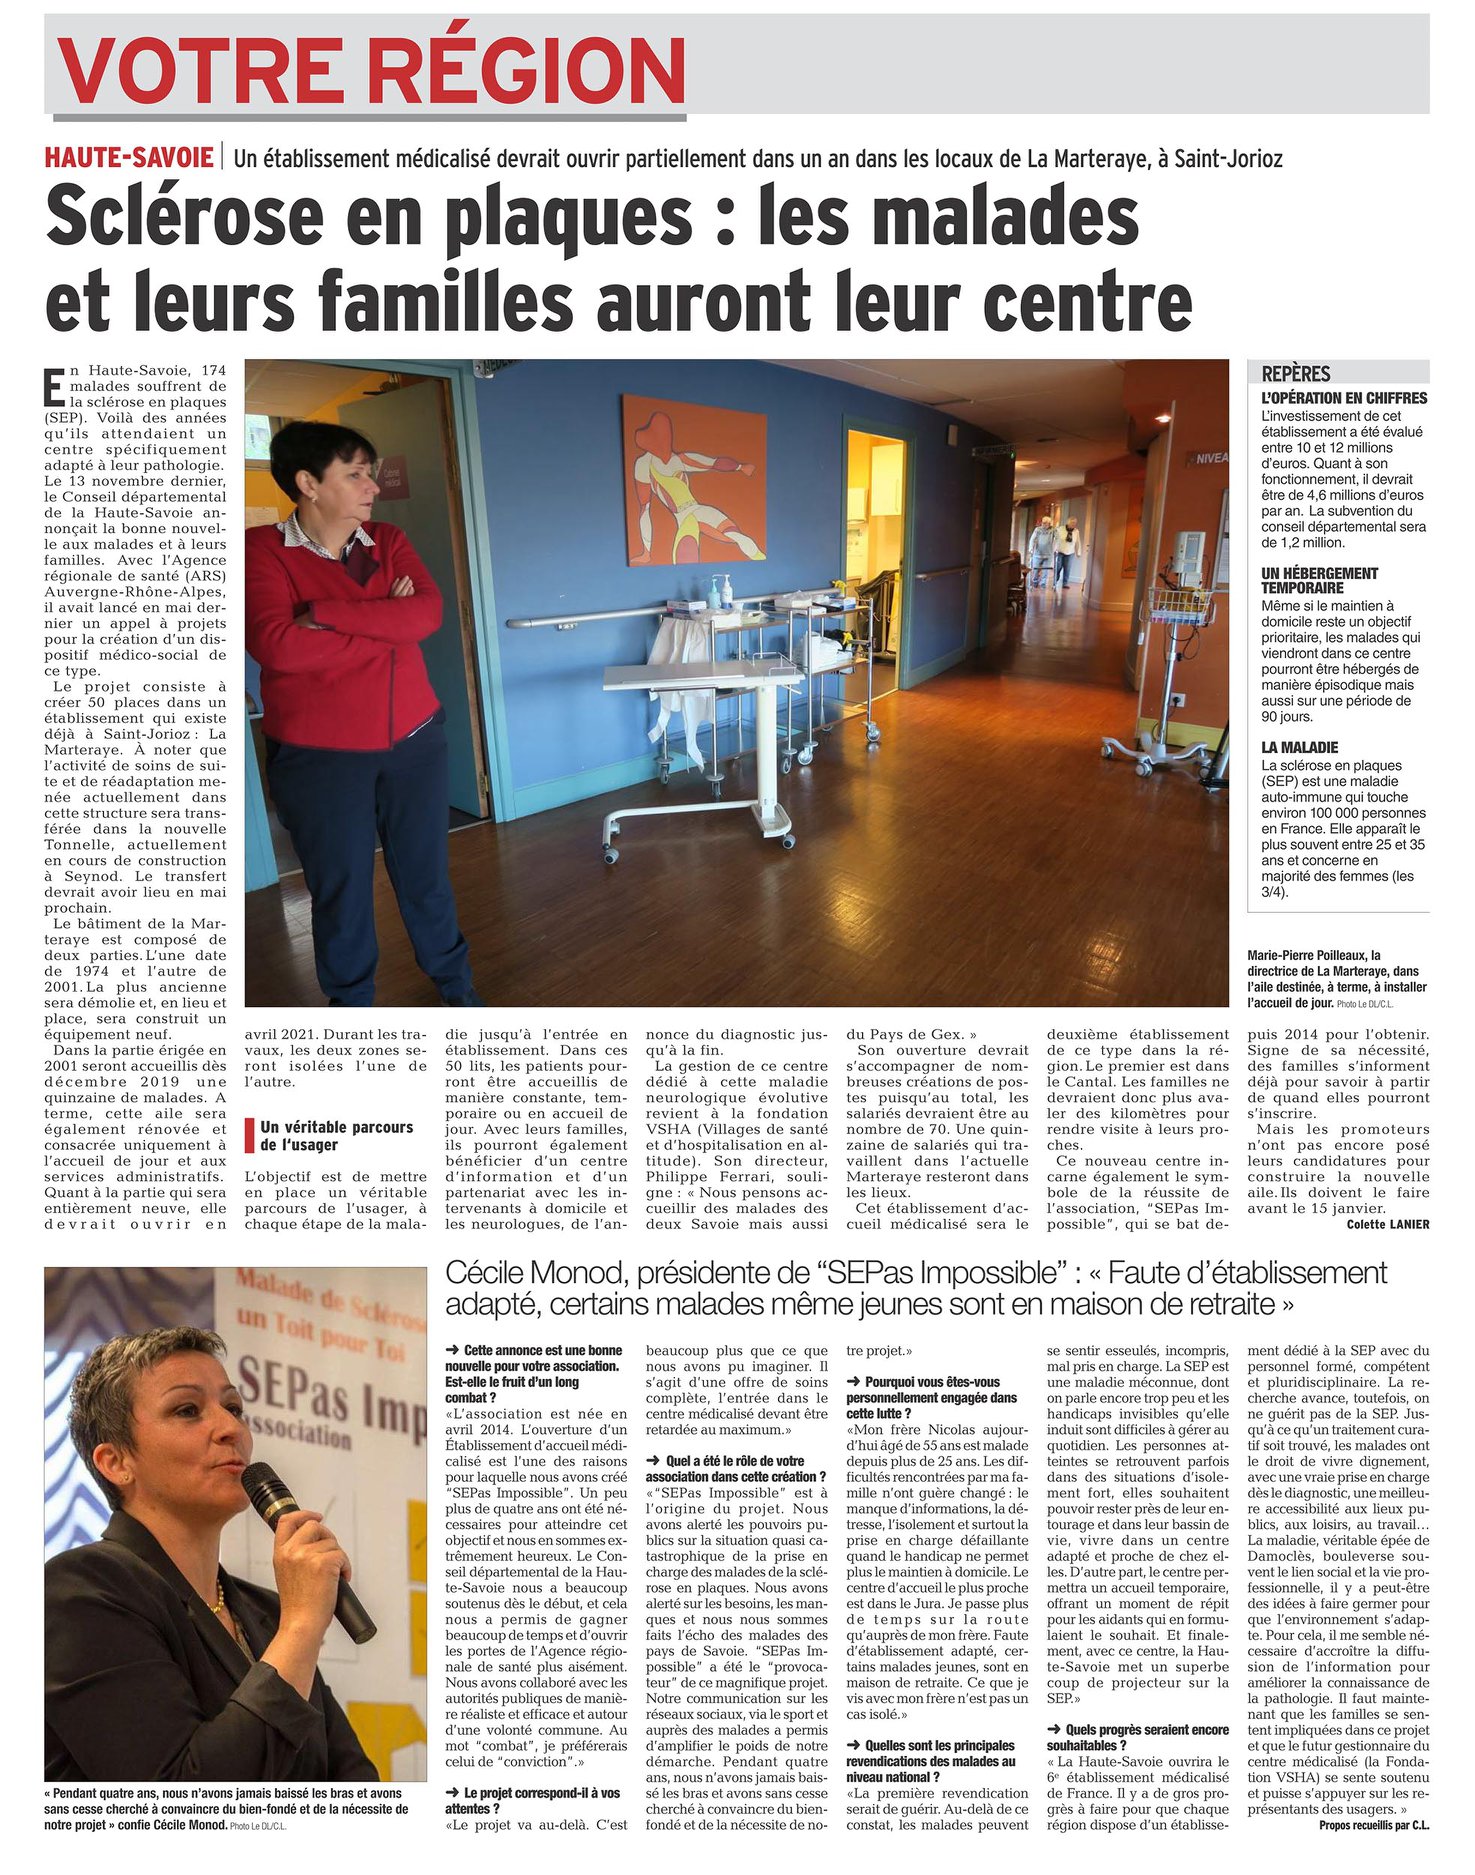 Le Dauphiné : Sclérose en plaques : les malades et leurs familles auront leur centre